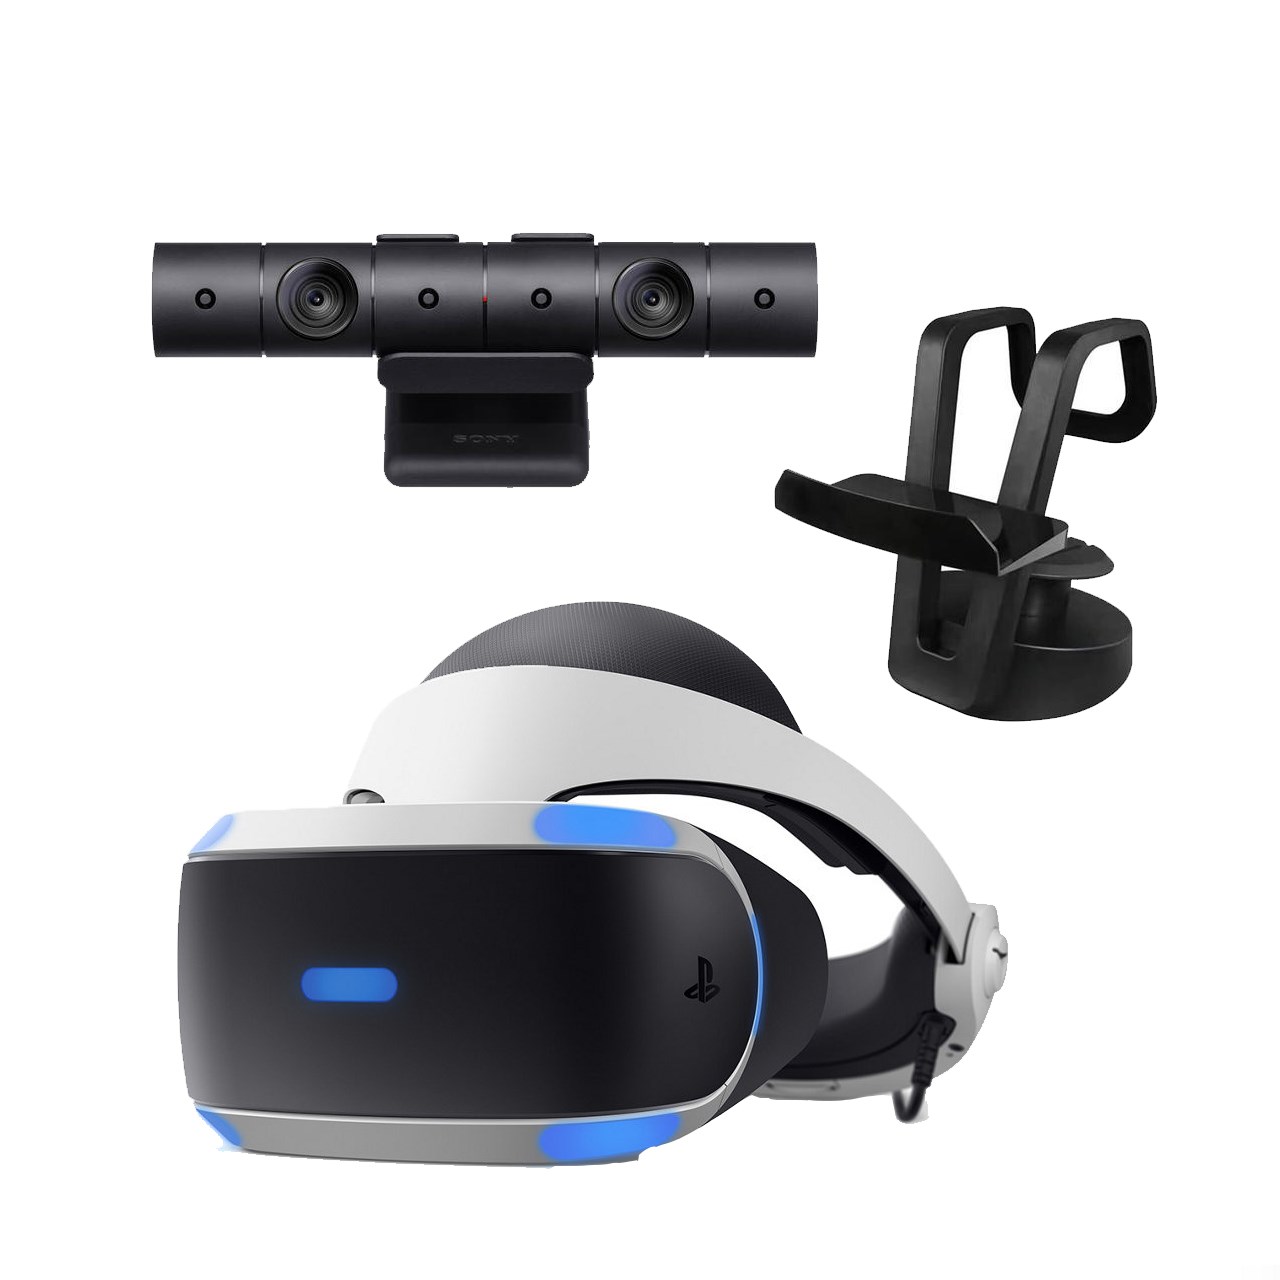 مجموعه عینک واقعیت مجازی سونی مدل PlayStation VR به همراه دوربین